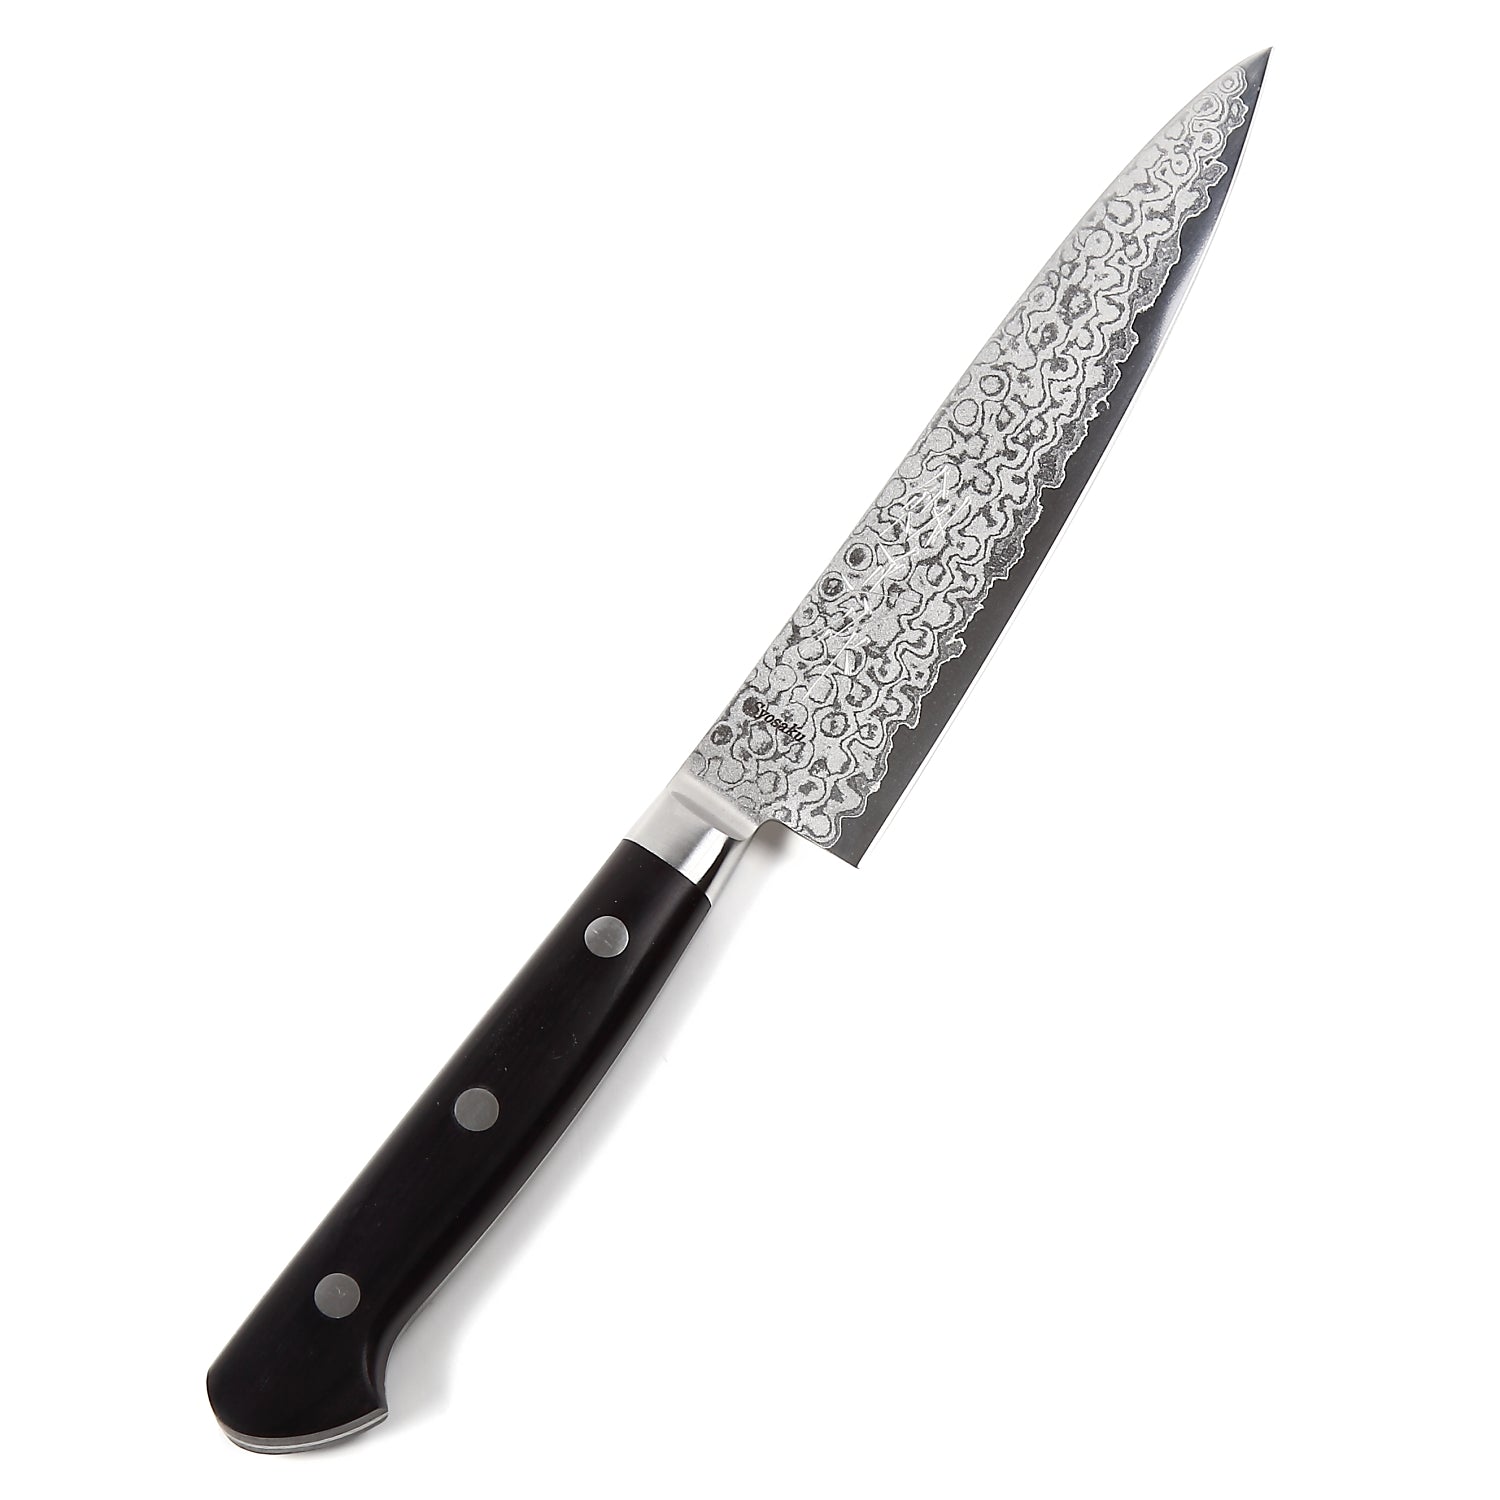 Syosaku Japanese Petty Knife Shaded Damascus VG-10 16 Layer Black Pakkawood Handle, 5.3-inch (135mm)